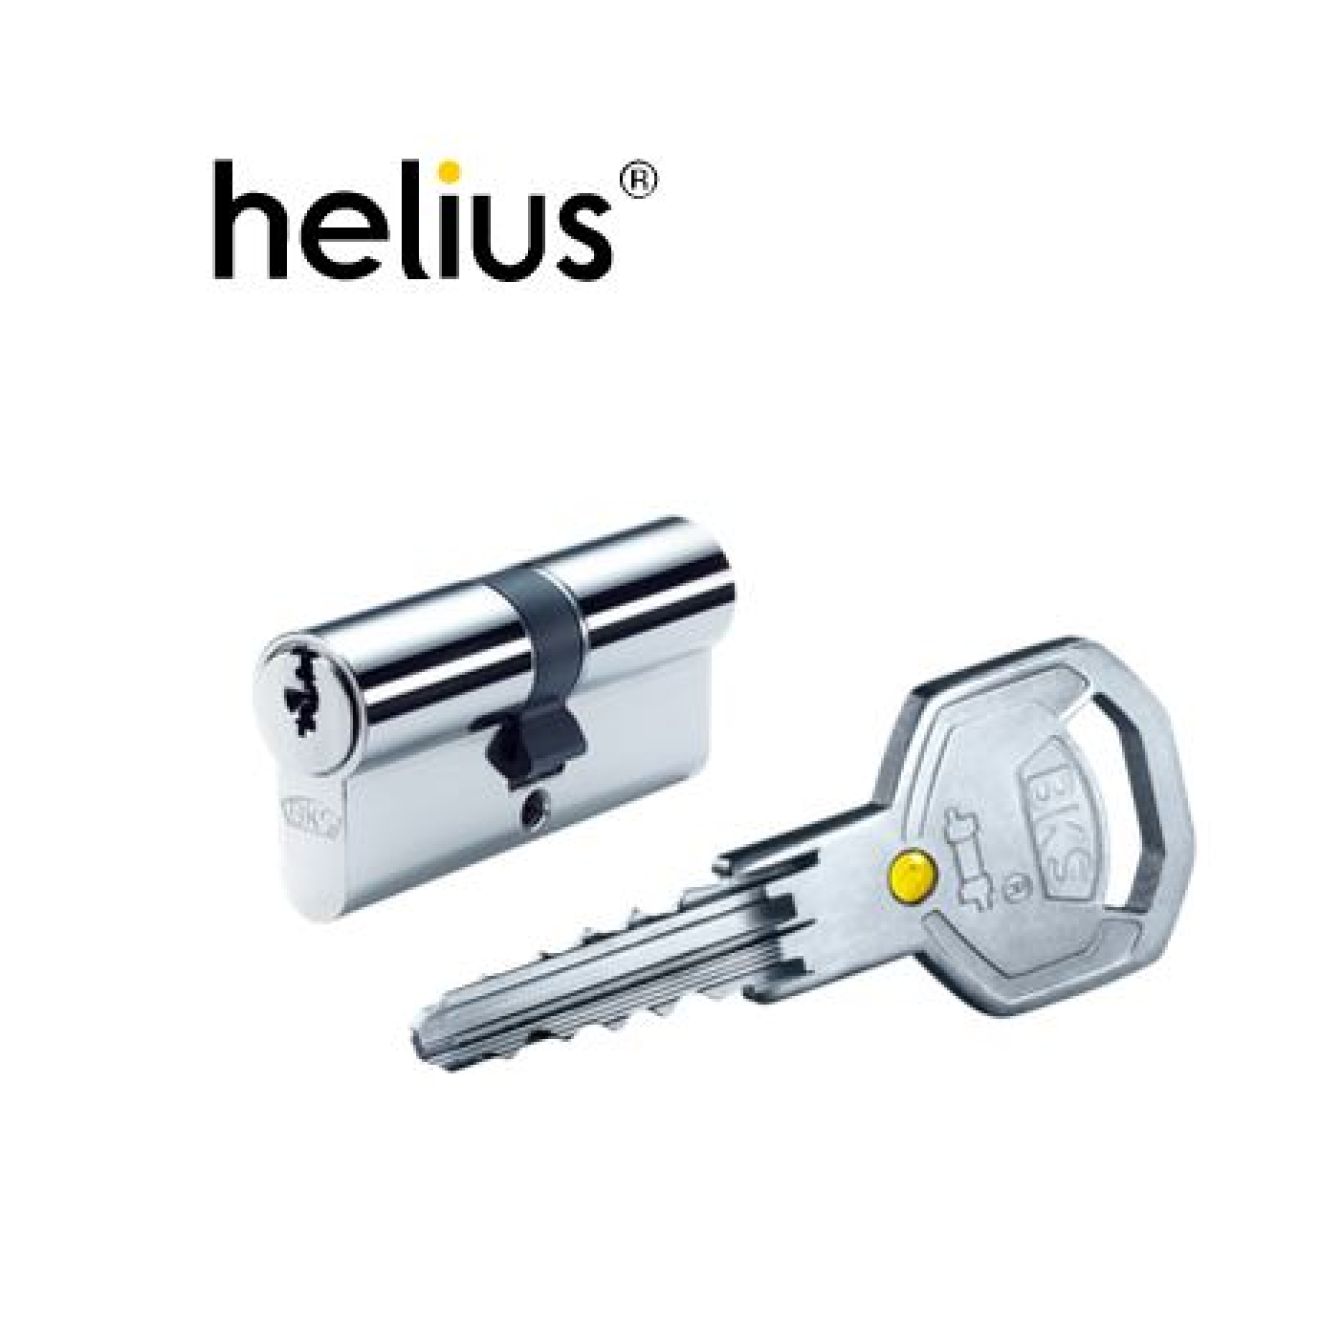 BKS Mehrschlüssel/Zusatzschlüssel für Profilzylinder Serie Helius WS42 